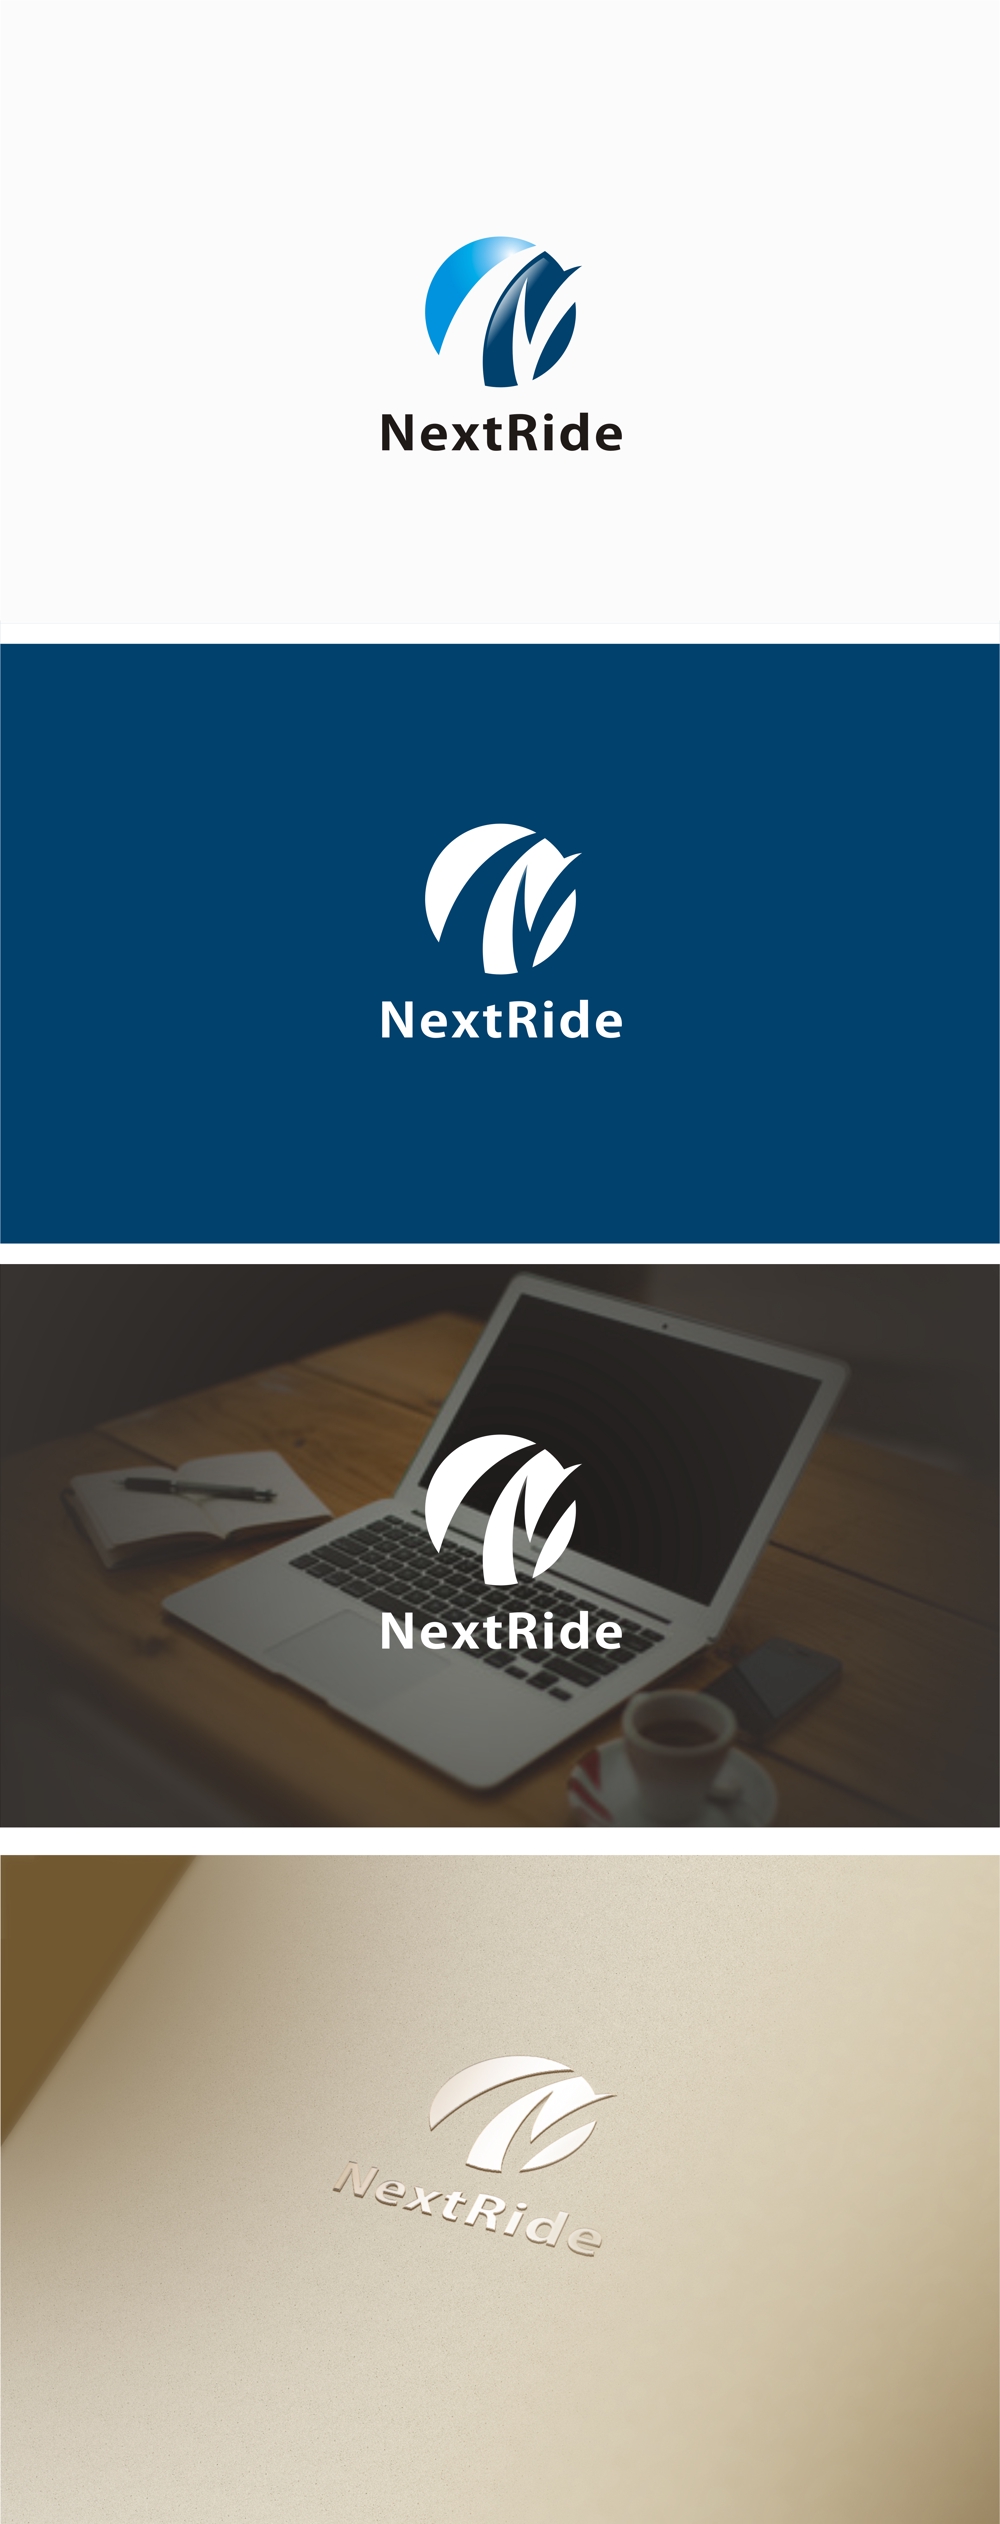 NextRide.jpg